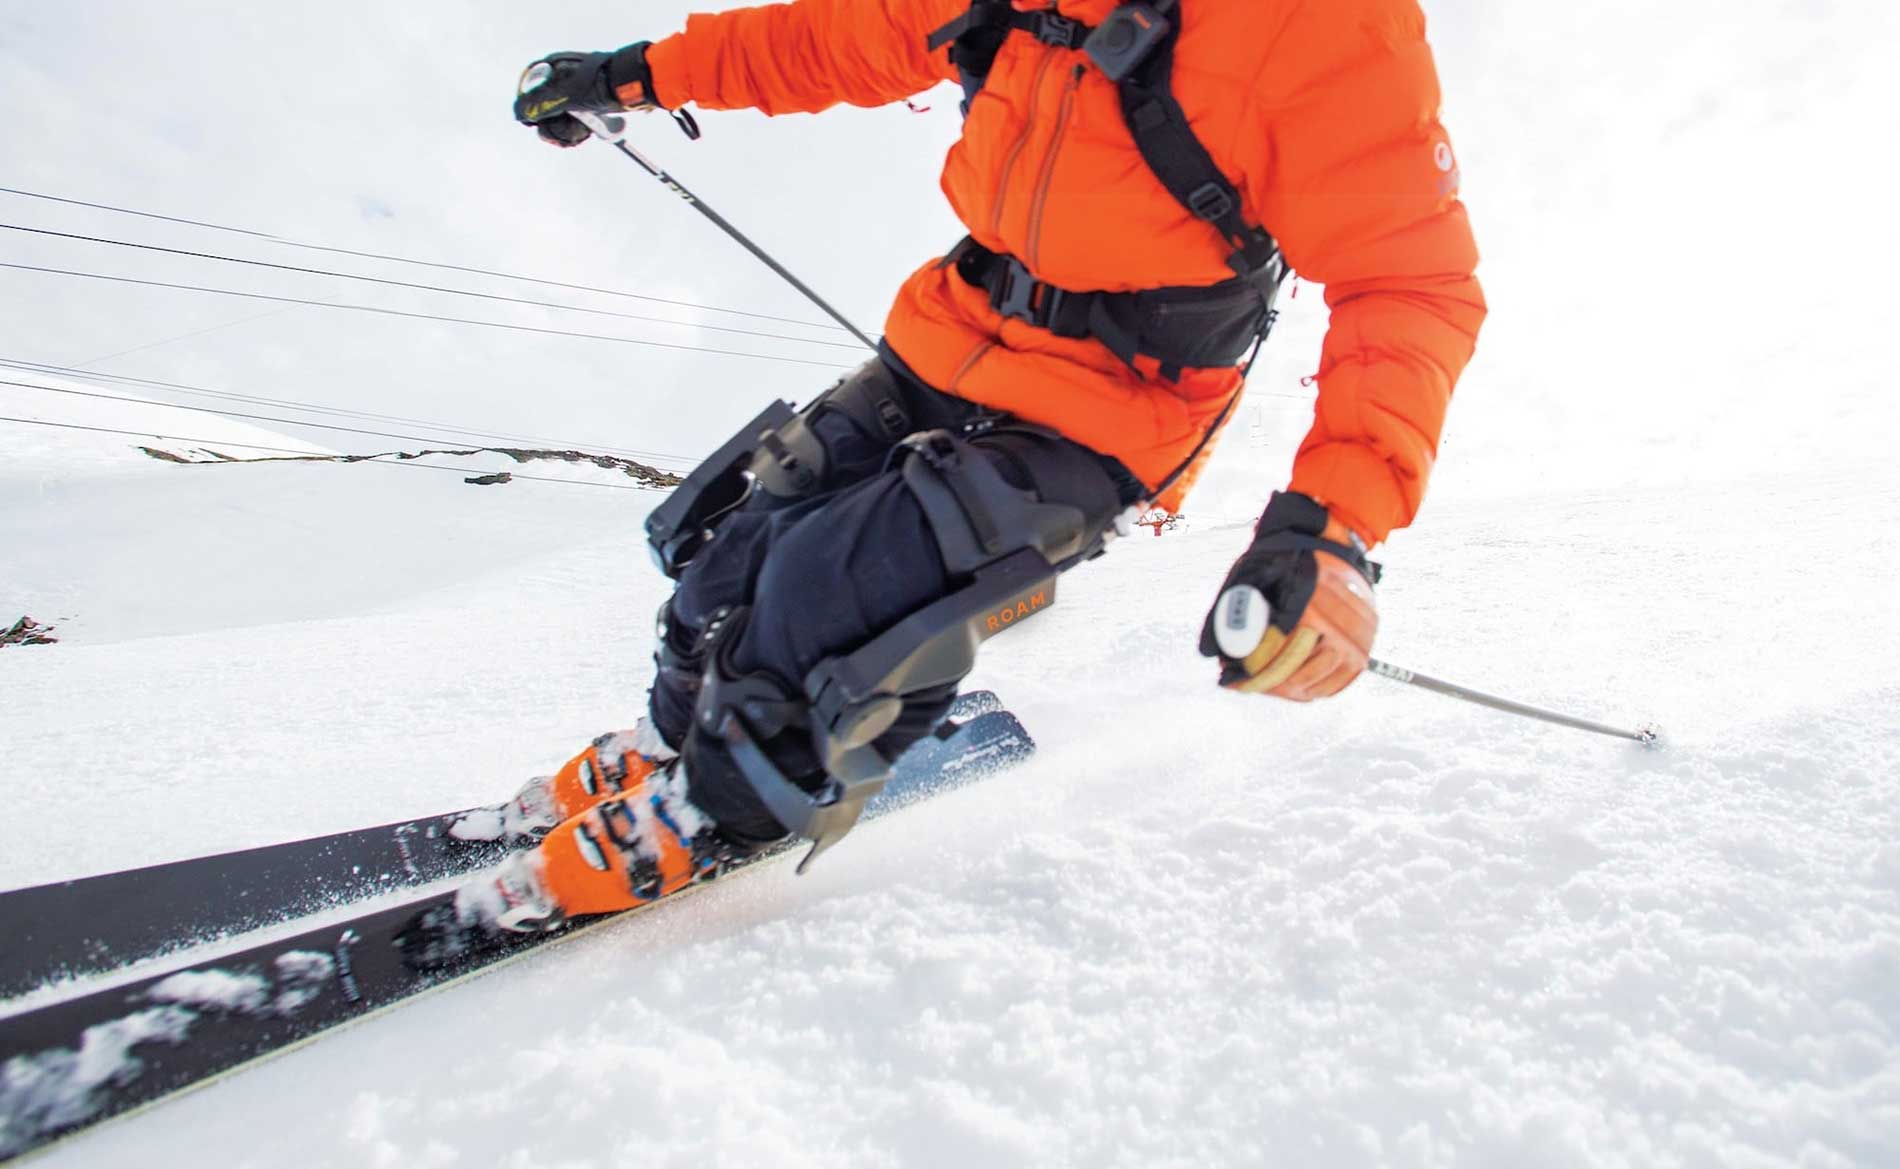 Genouillère ligamentaire : protégez vos genoux sur les pistes de ski ! 